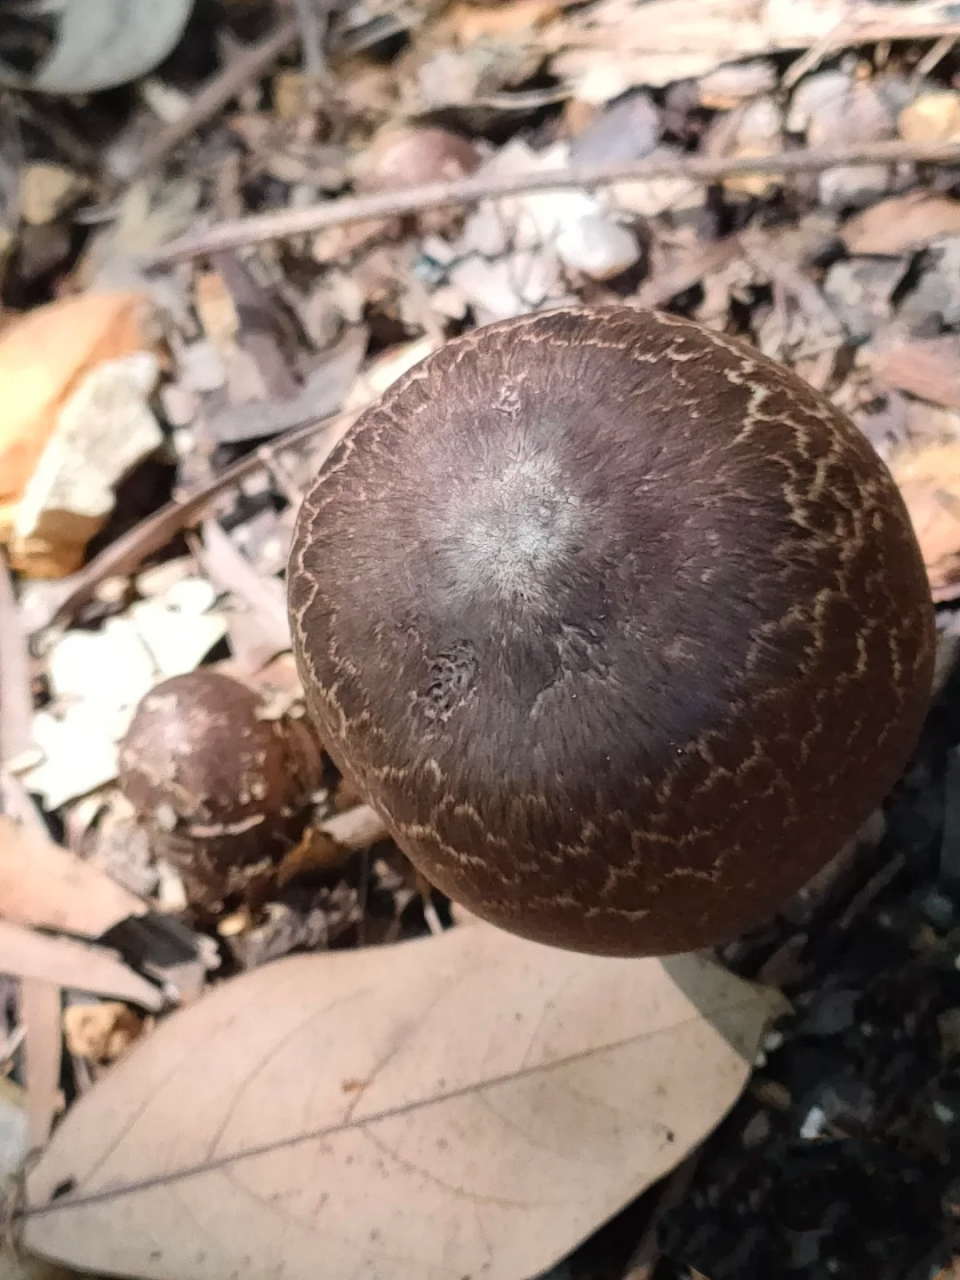 大家帮忙鉴定一下,这个蘑菇能吃吗?松树林里采到的,很大一个